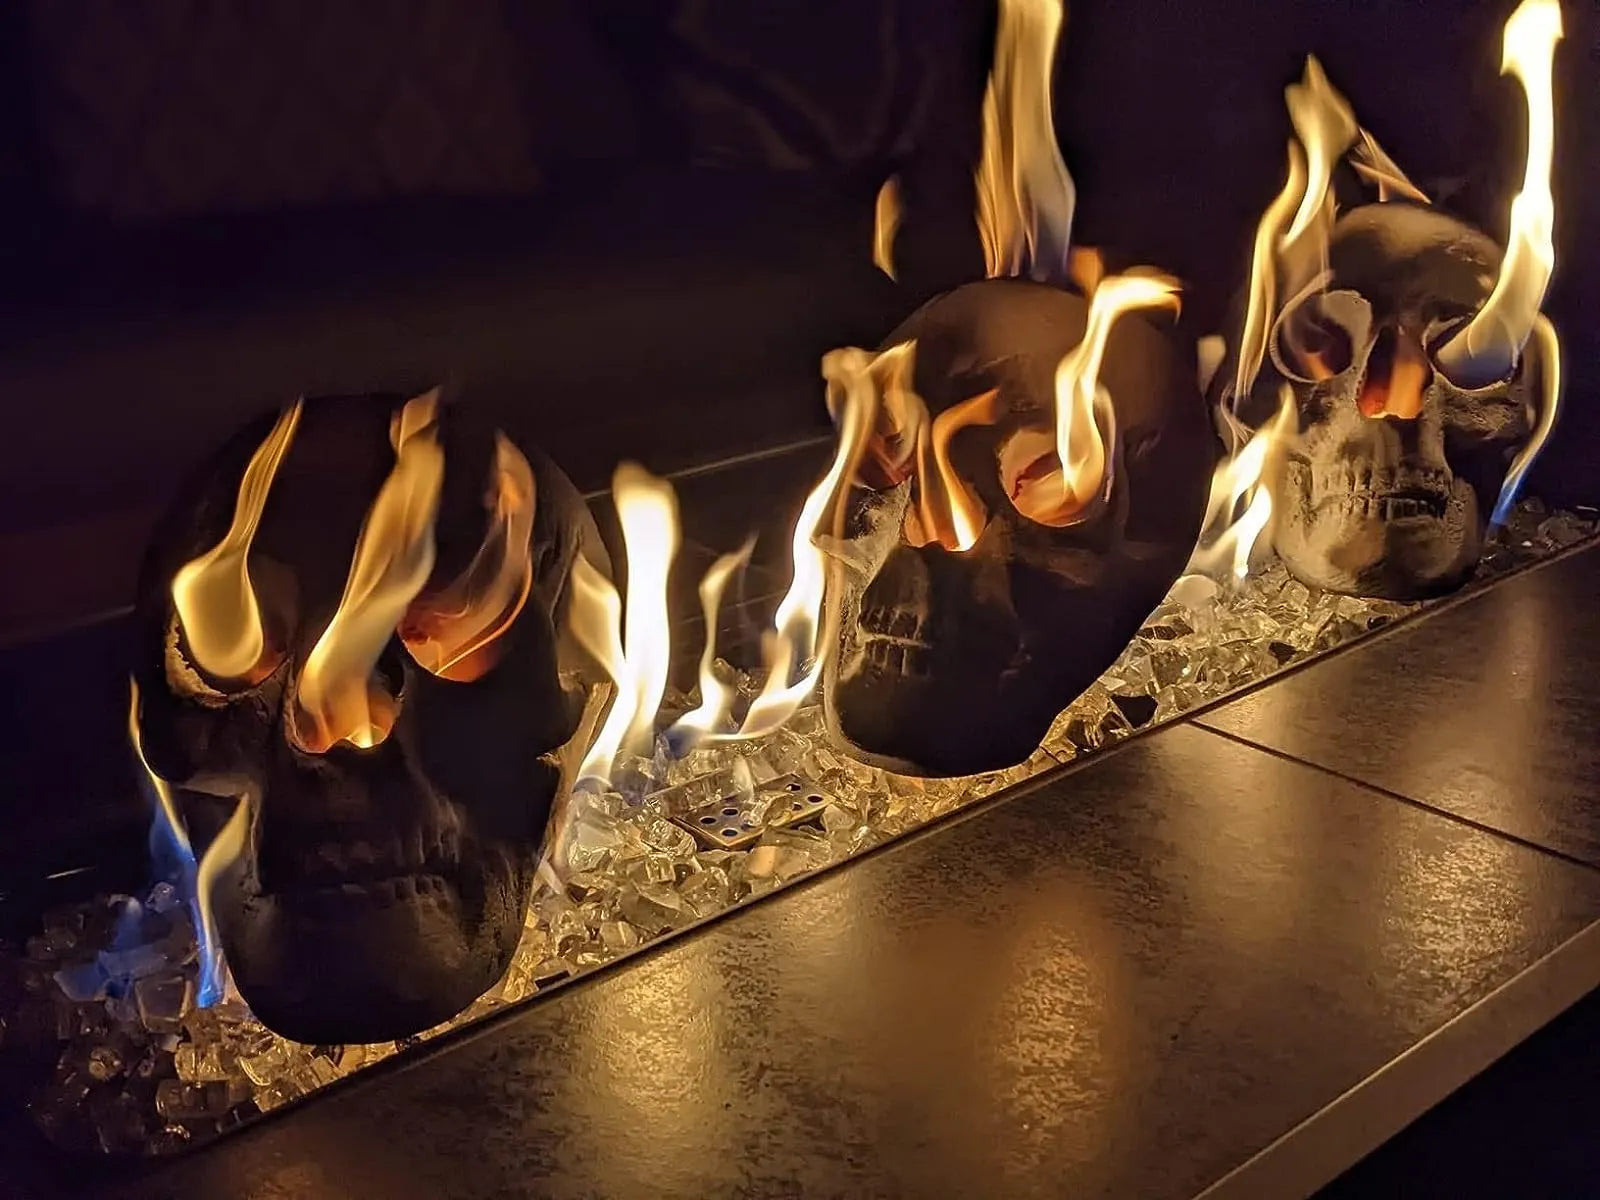 FlameSkull™ Keramik-Feuerkorb-Totenköpfe (4 Stk)